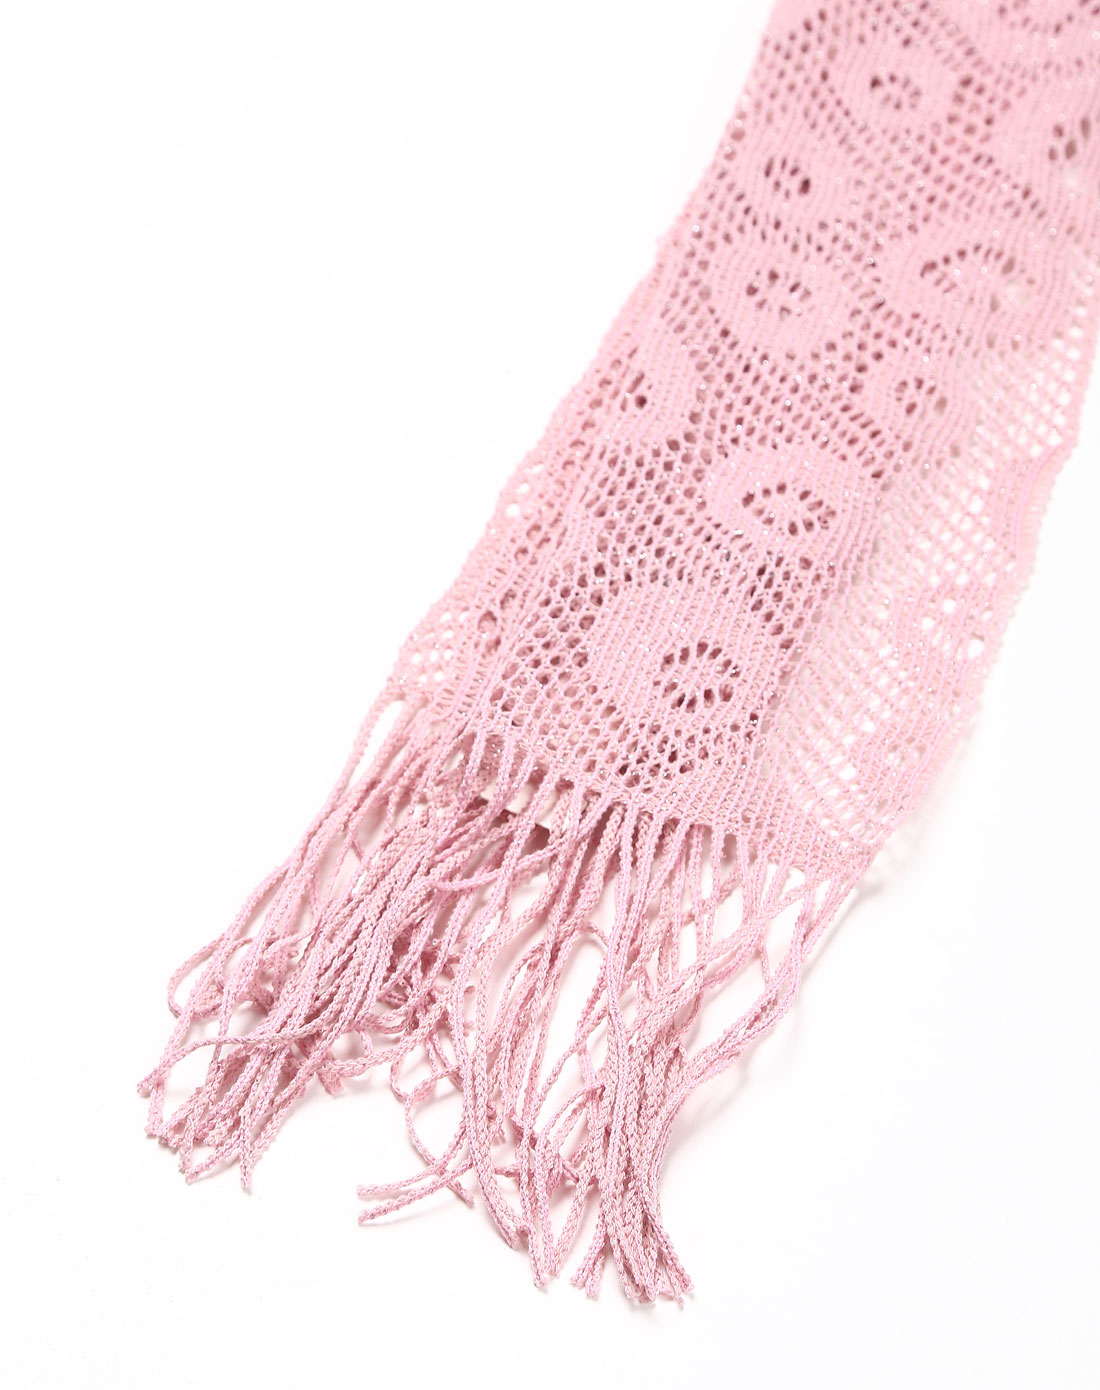 > 镂空风格粉红色编织围巾